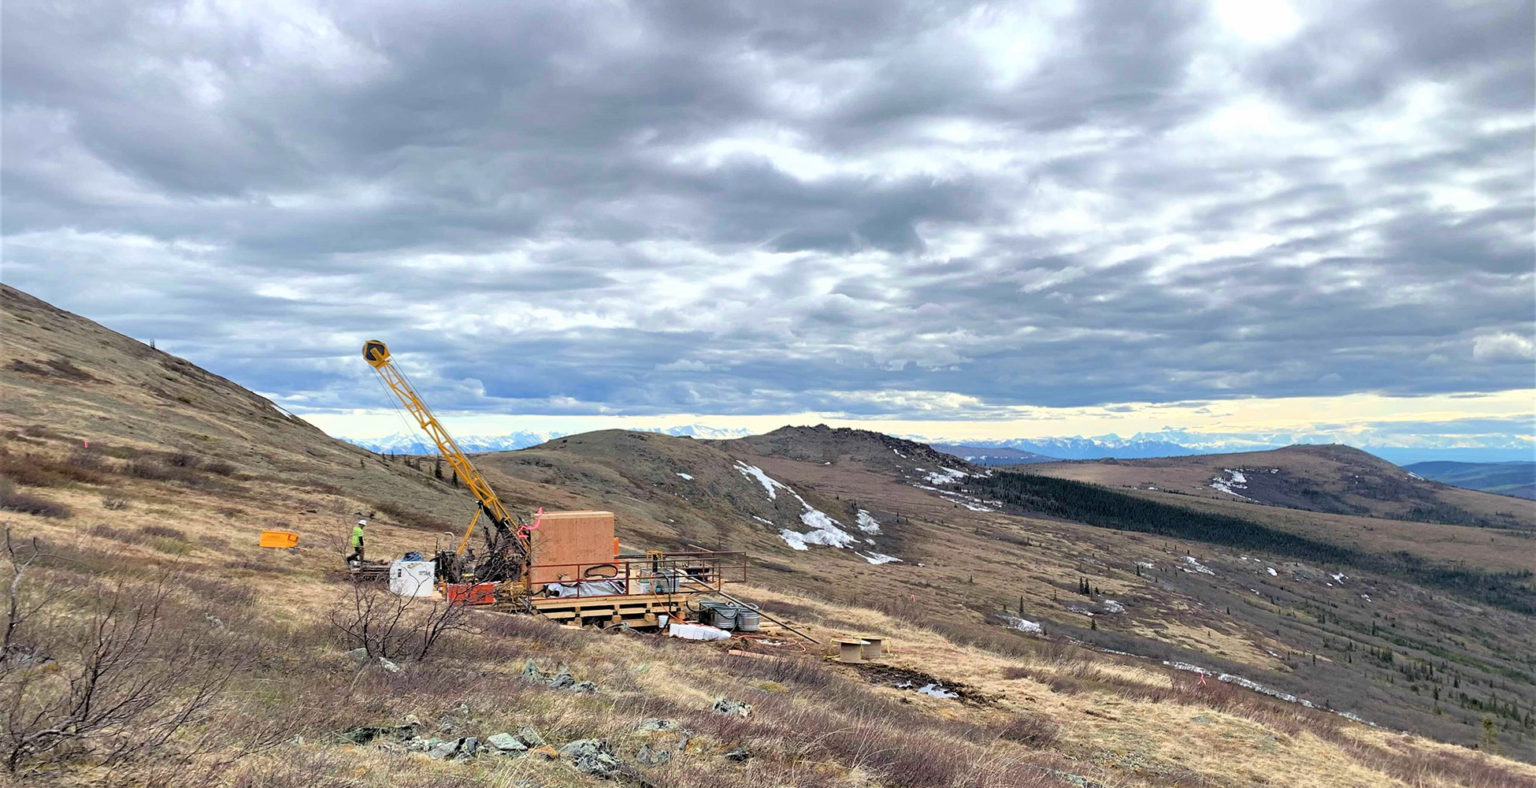 Kenorland Minerals options Alaska copper project to Antofagasta